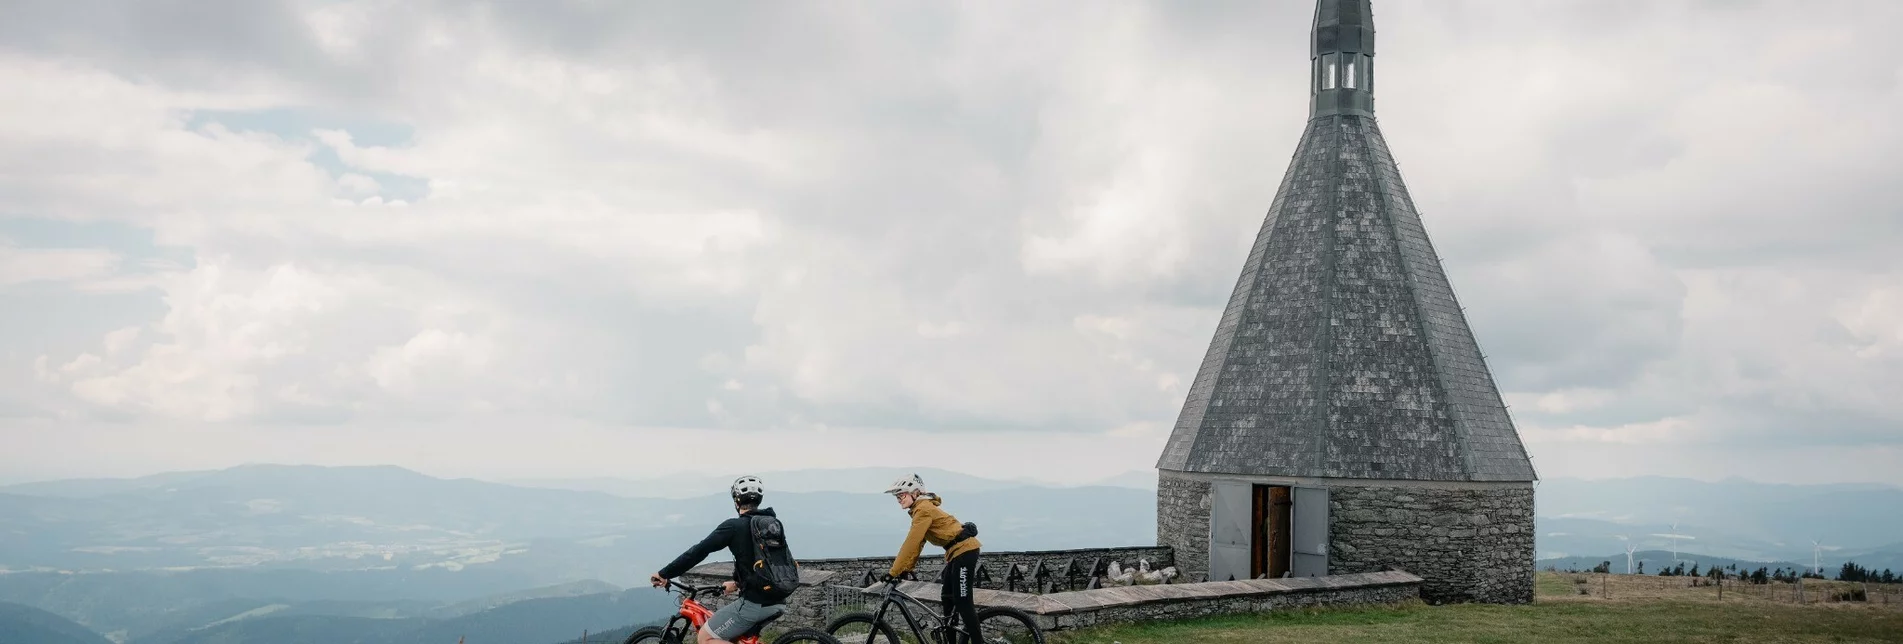 Mountainbike Wexl Trails - Hochwechsel Trailrunde - Touren-Impression #1 | © Verein Tourismusentwicklung Steirischer Wechsel